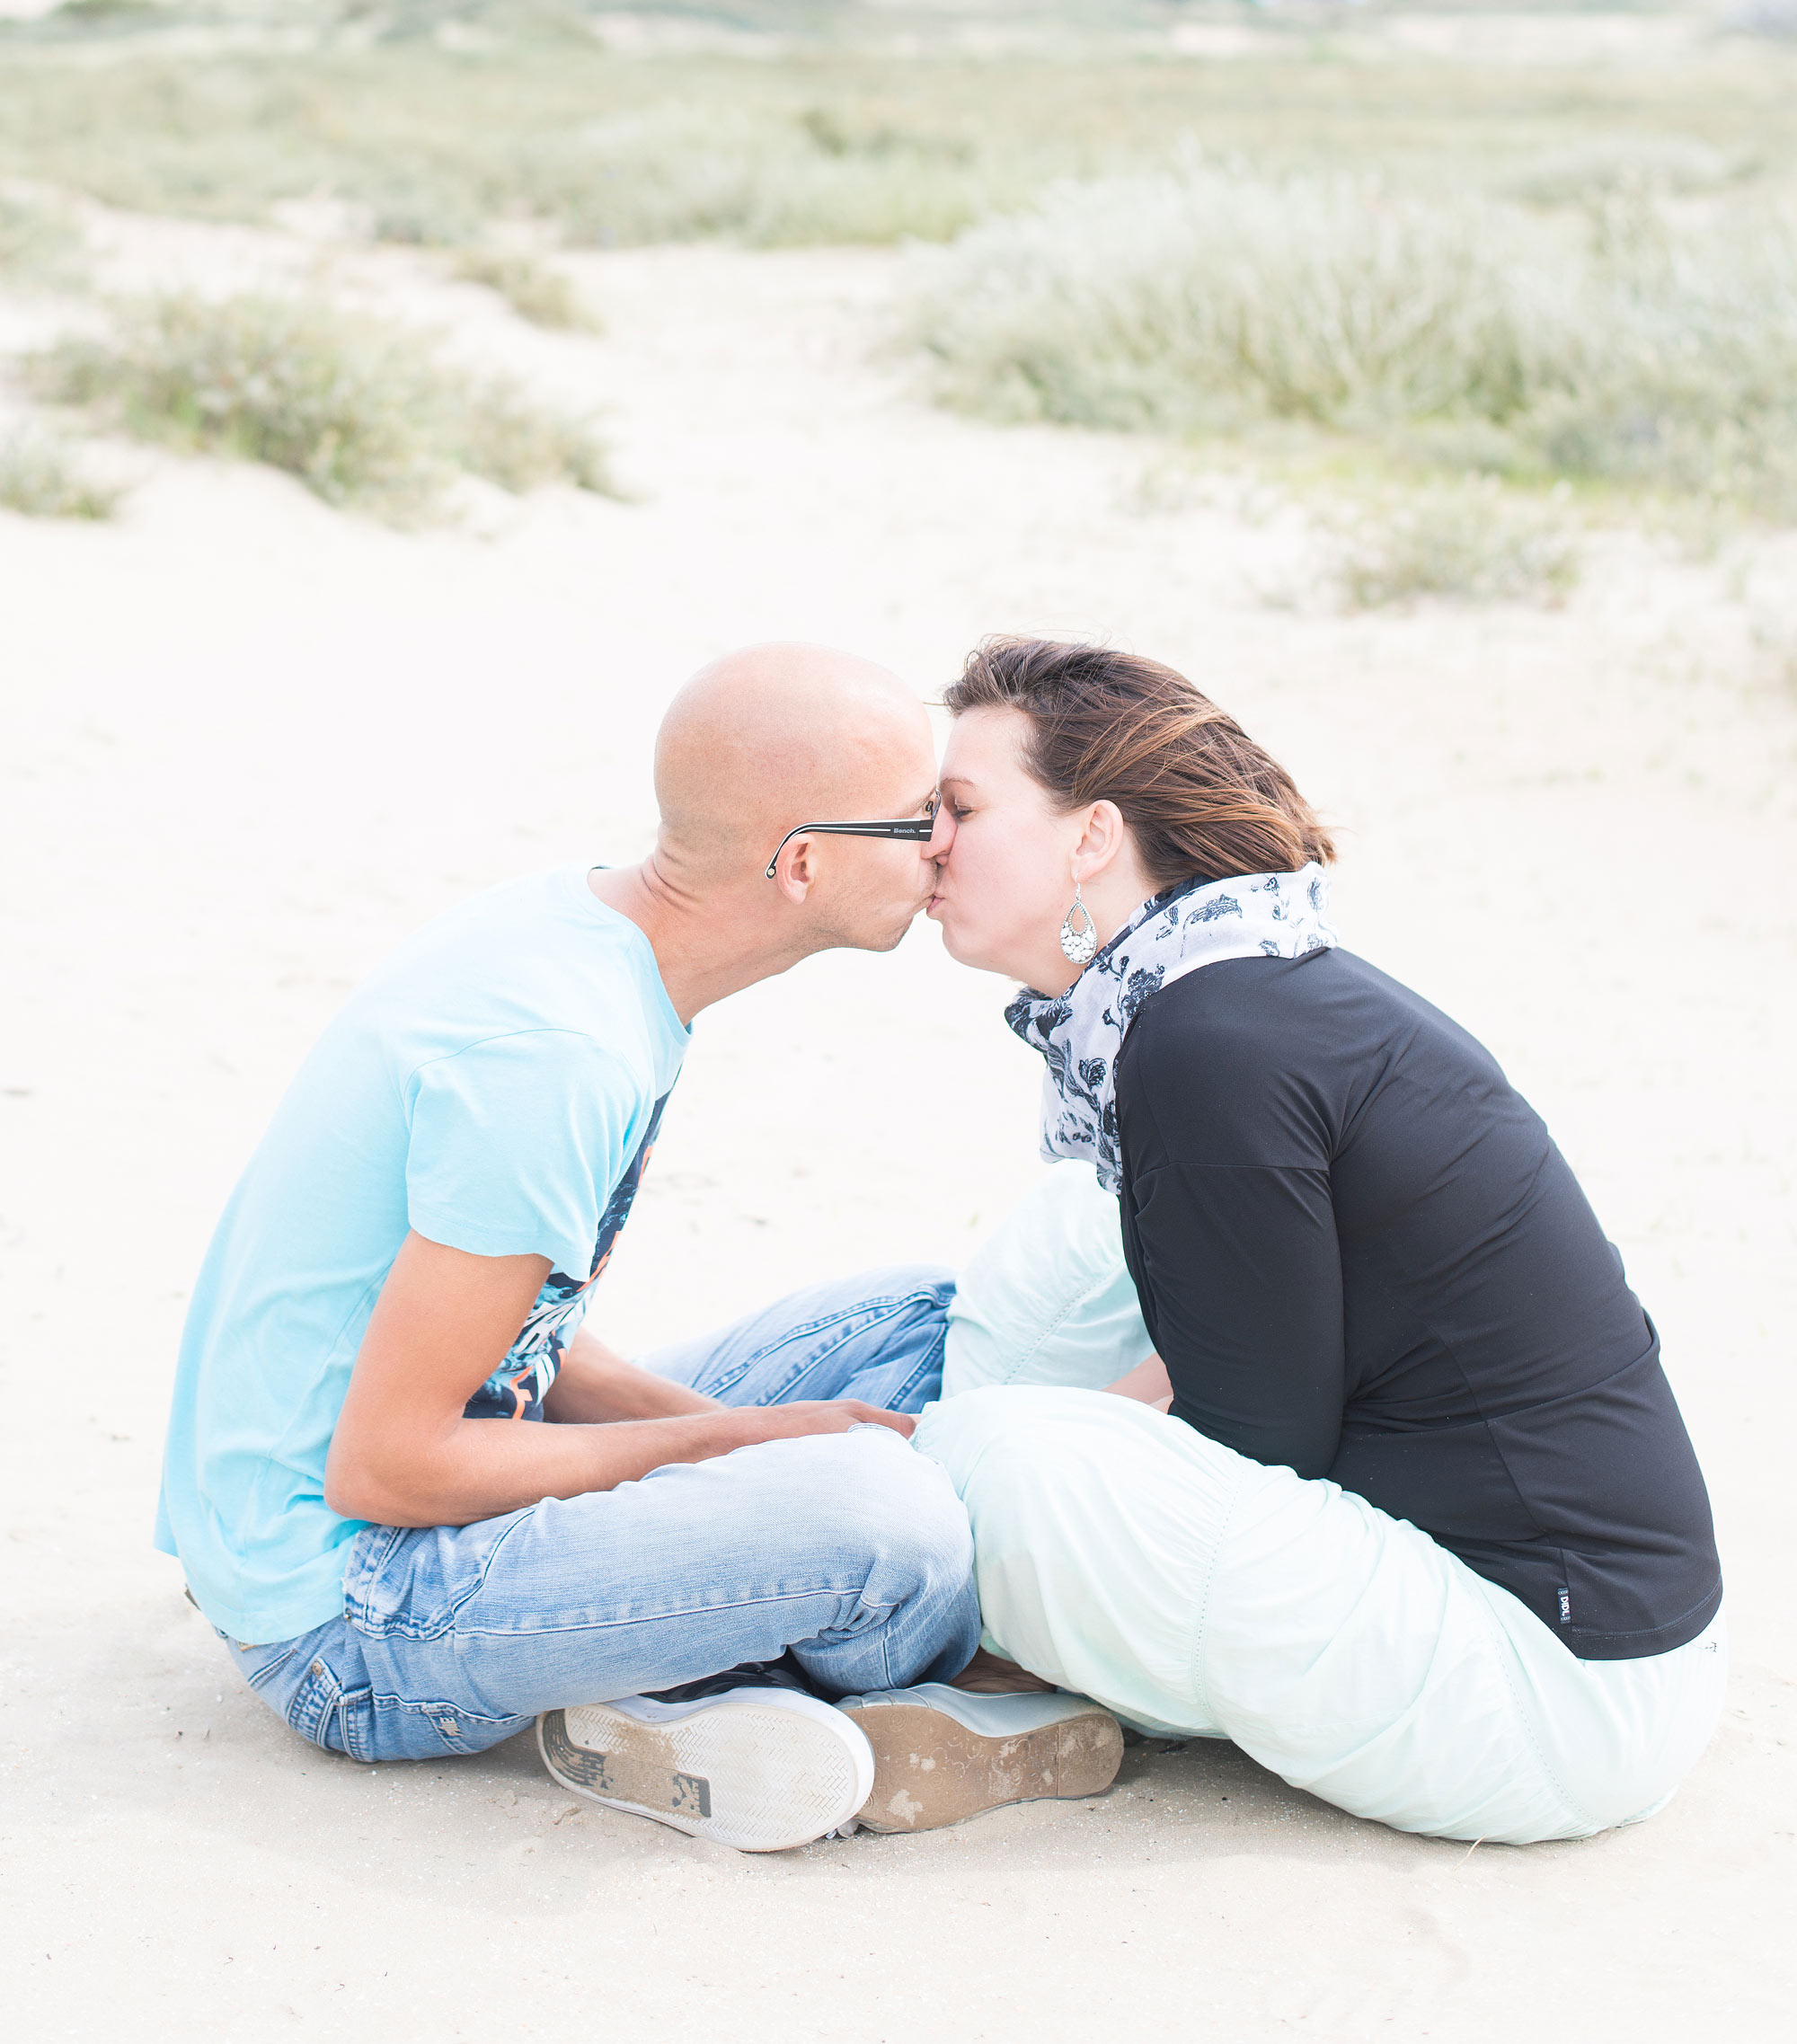 Loveshoot Fotoshoot Engagement Verlovingsshoot Strand Bloemendaal Zandvoort Parnassia